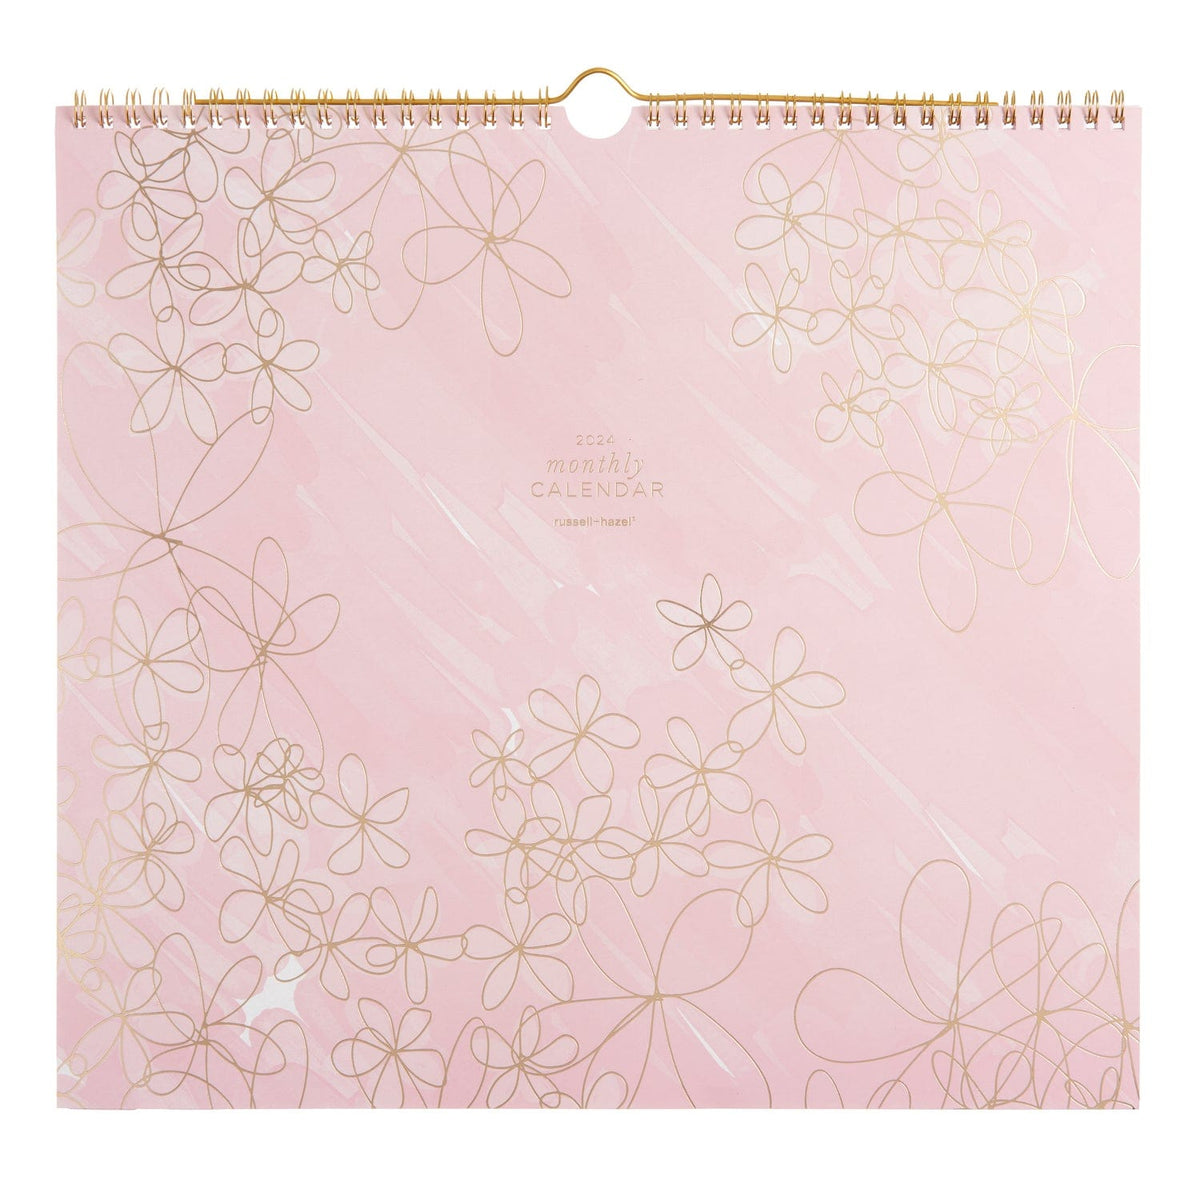 Blush Floral - Wall Calendar 67449 russell+hazel Calendar